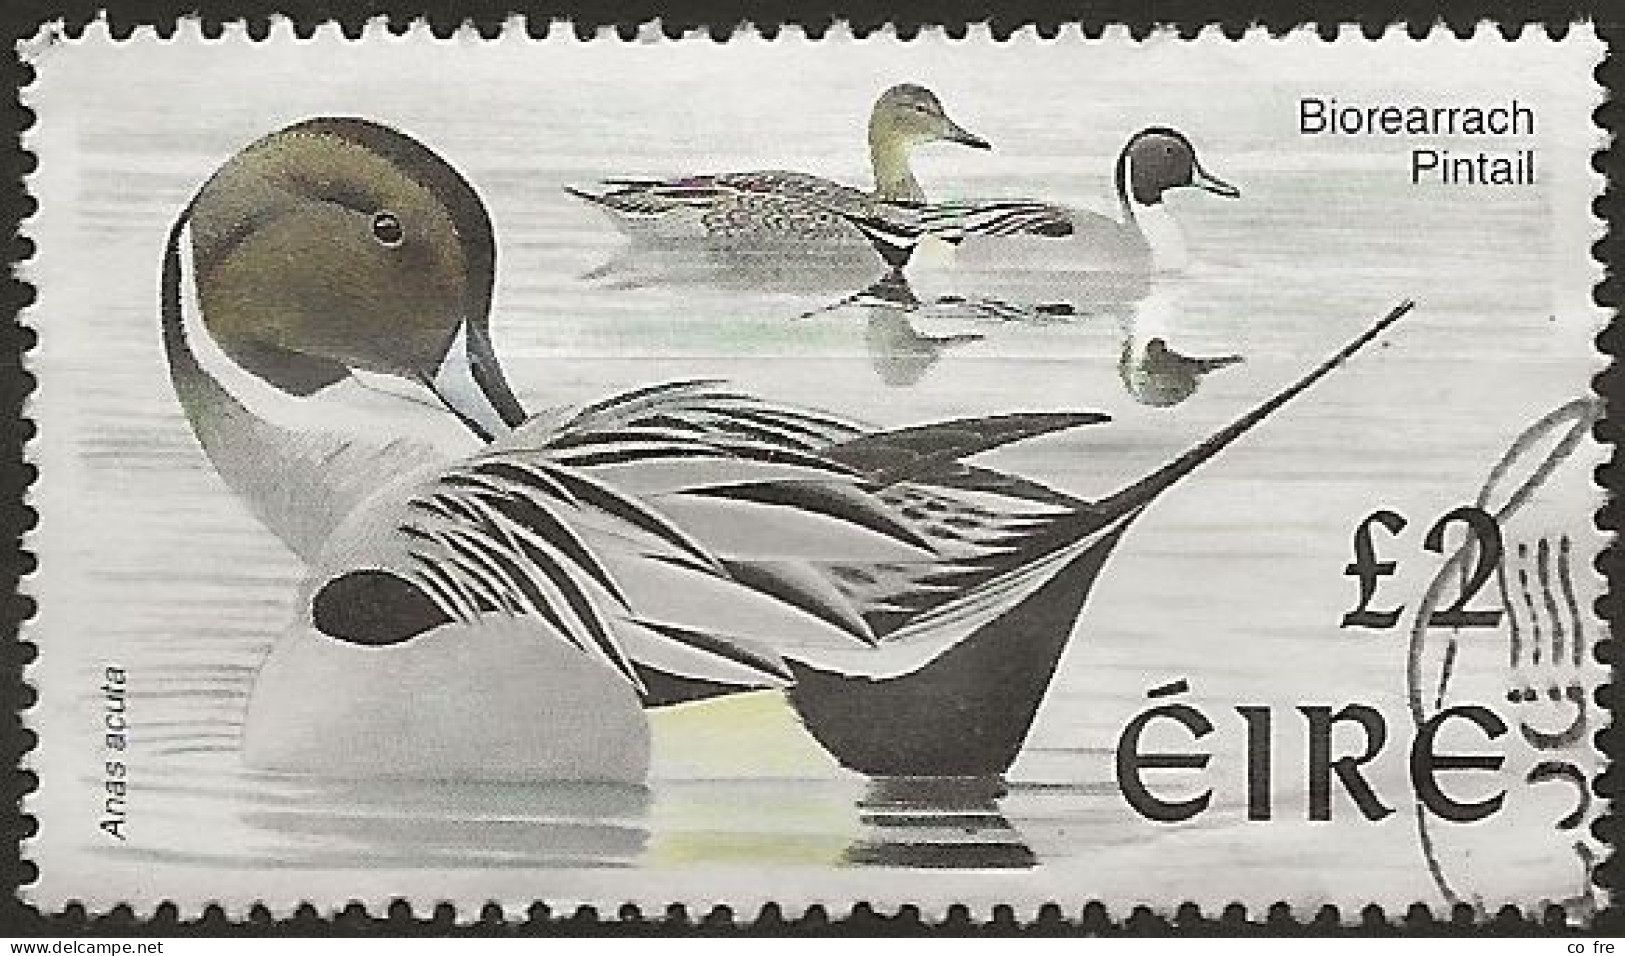 Irlande N°1063 (ref.2) - Used Stamps